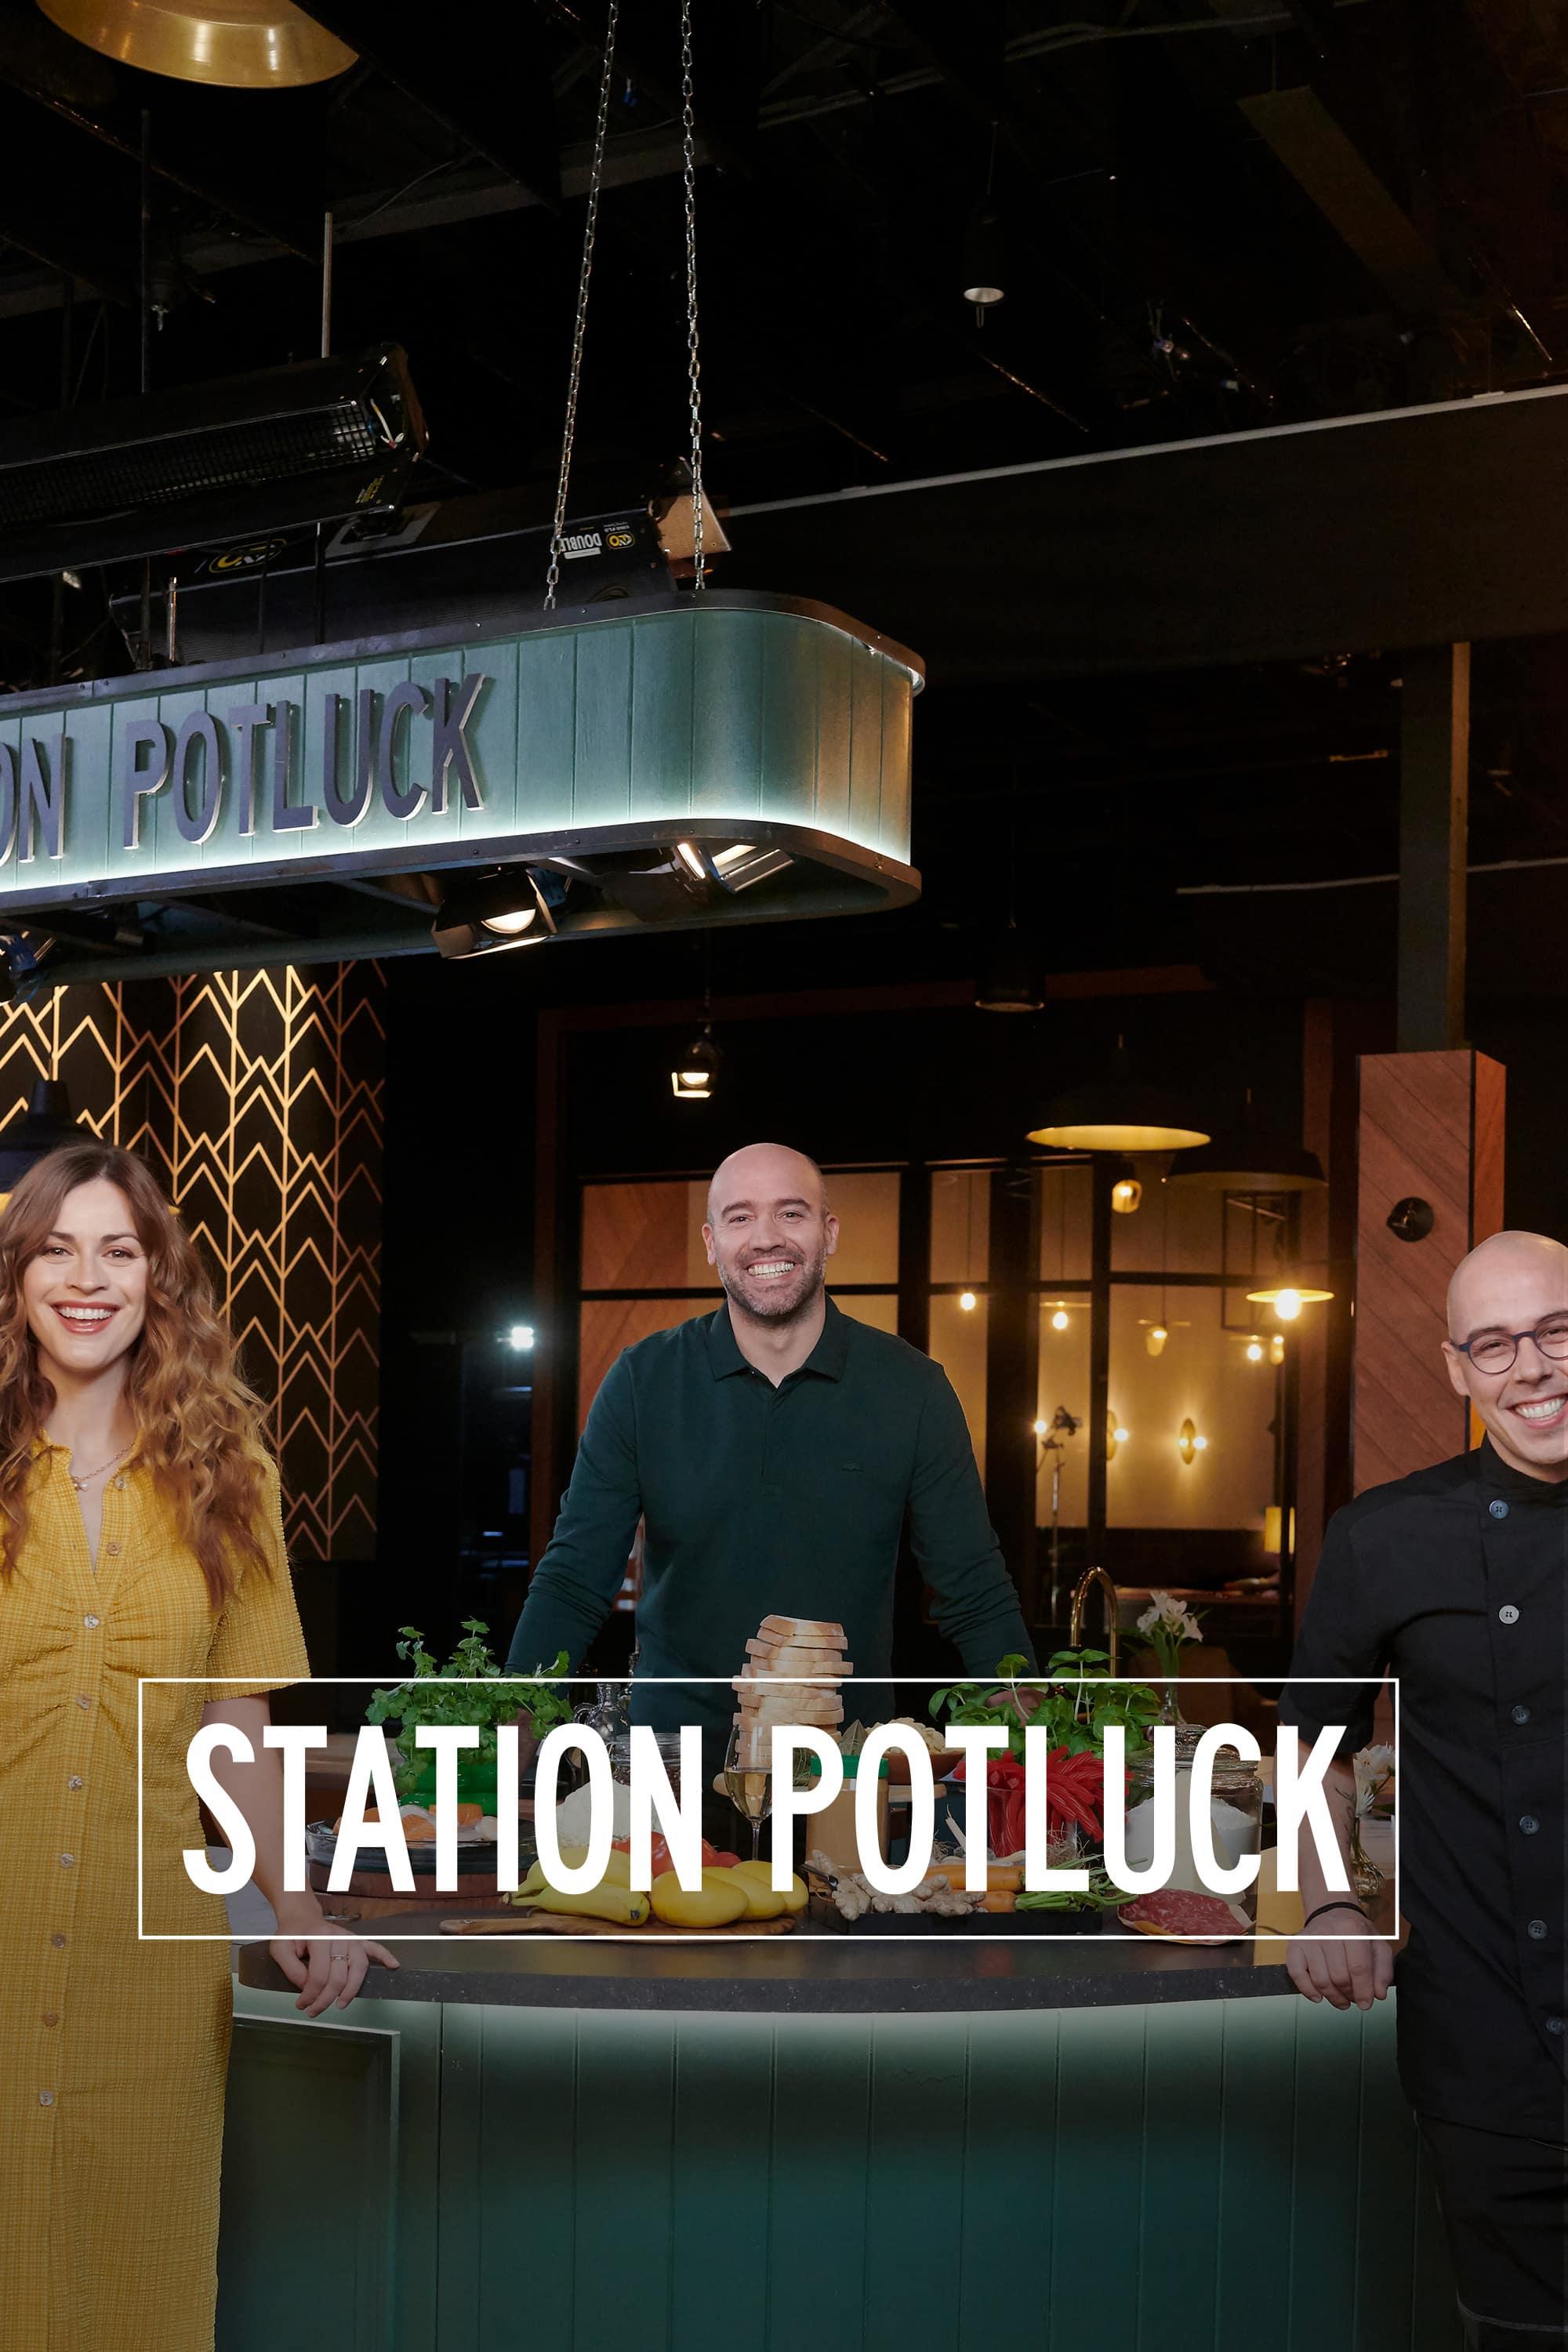 Station Potluck